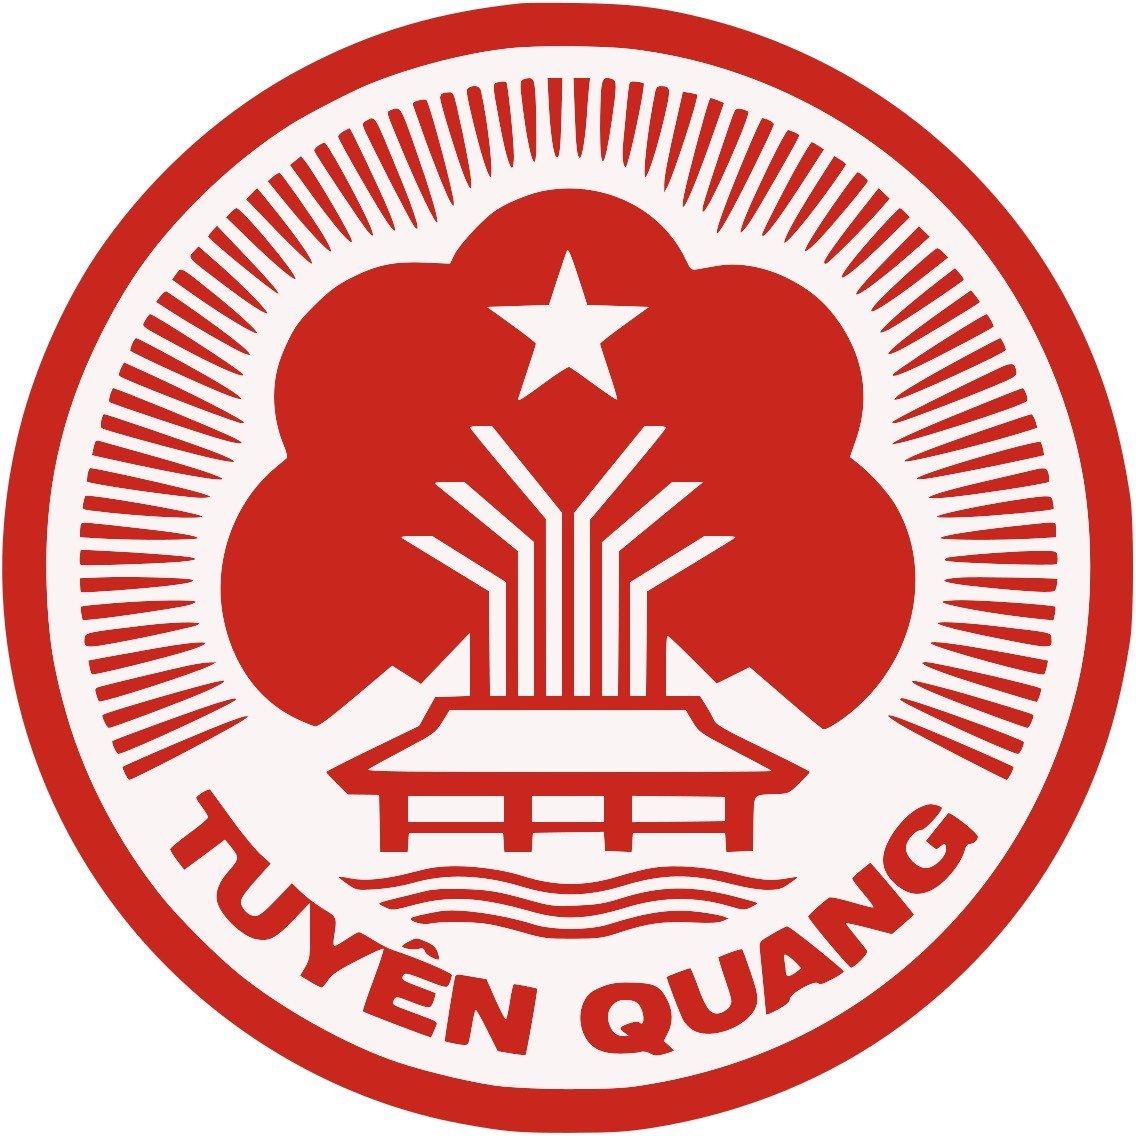 Tuyên Quang